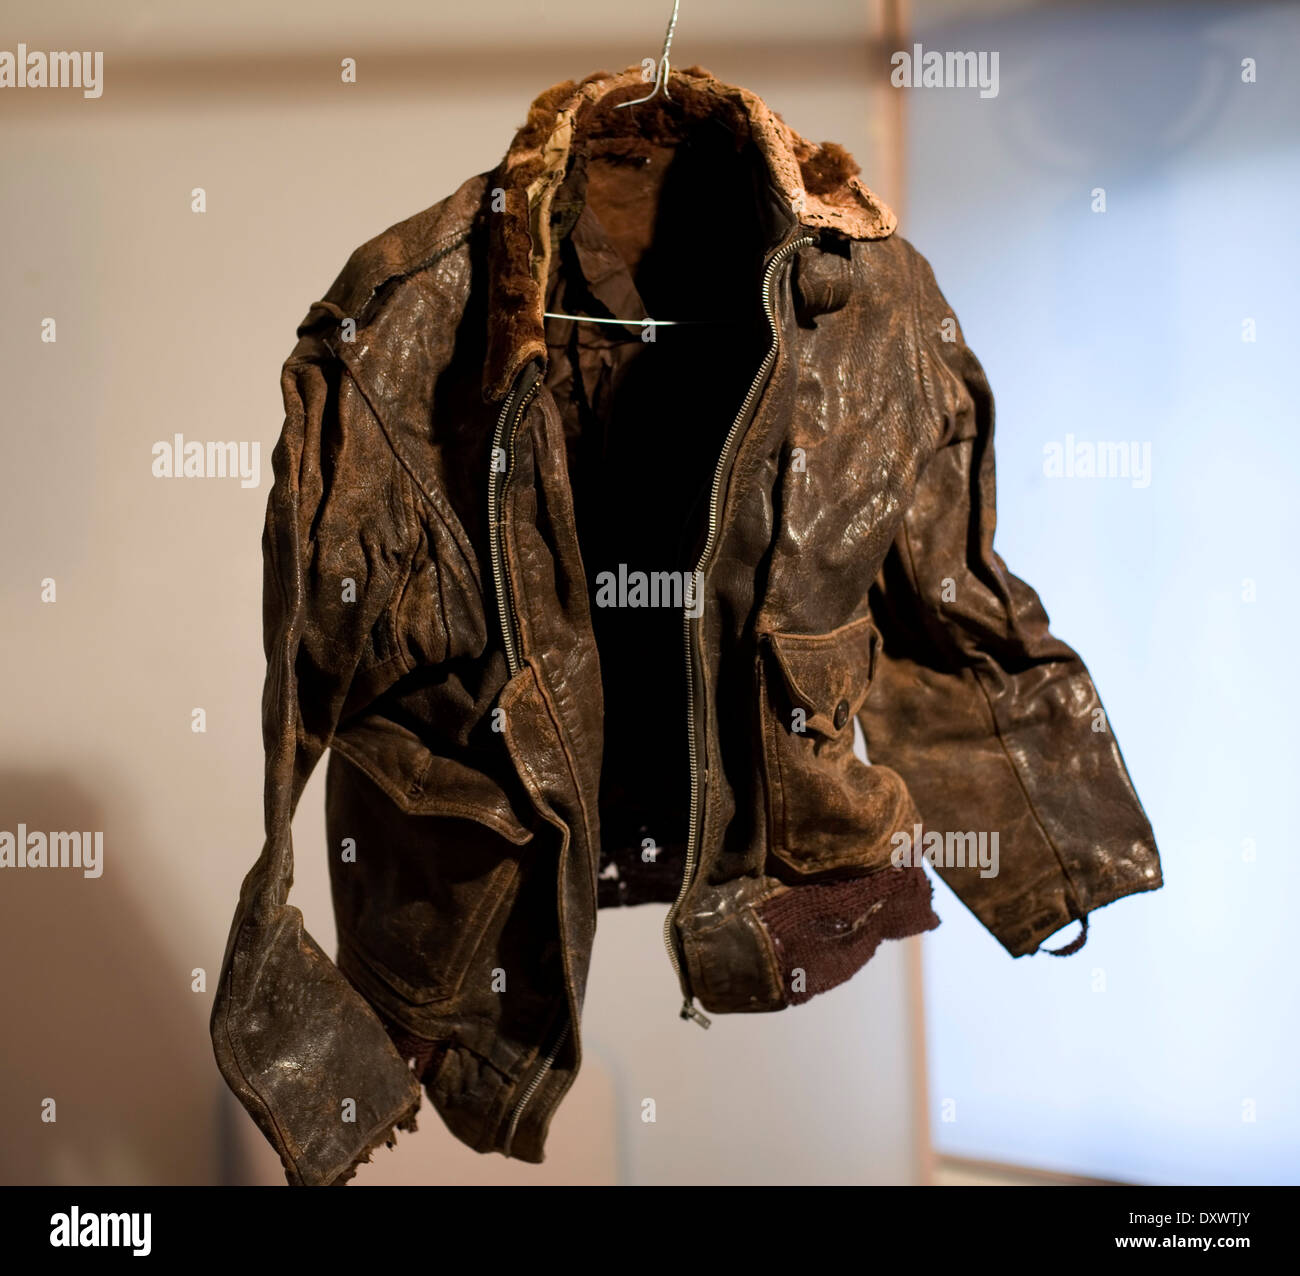 World War 2 leather flying jacket Stock Photo, Royalty Free Image ...